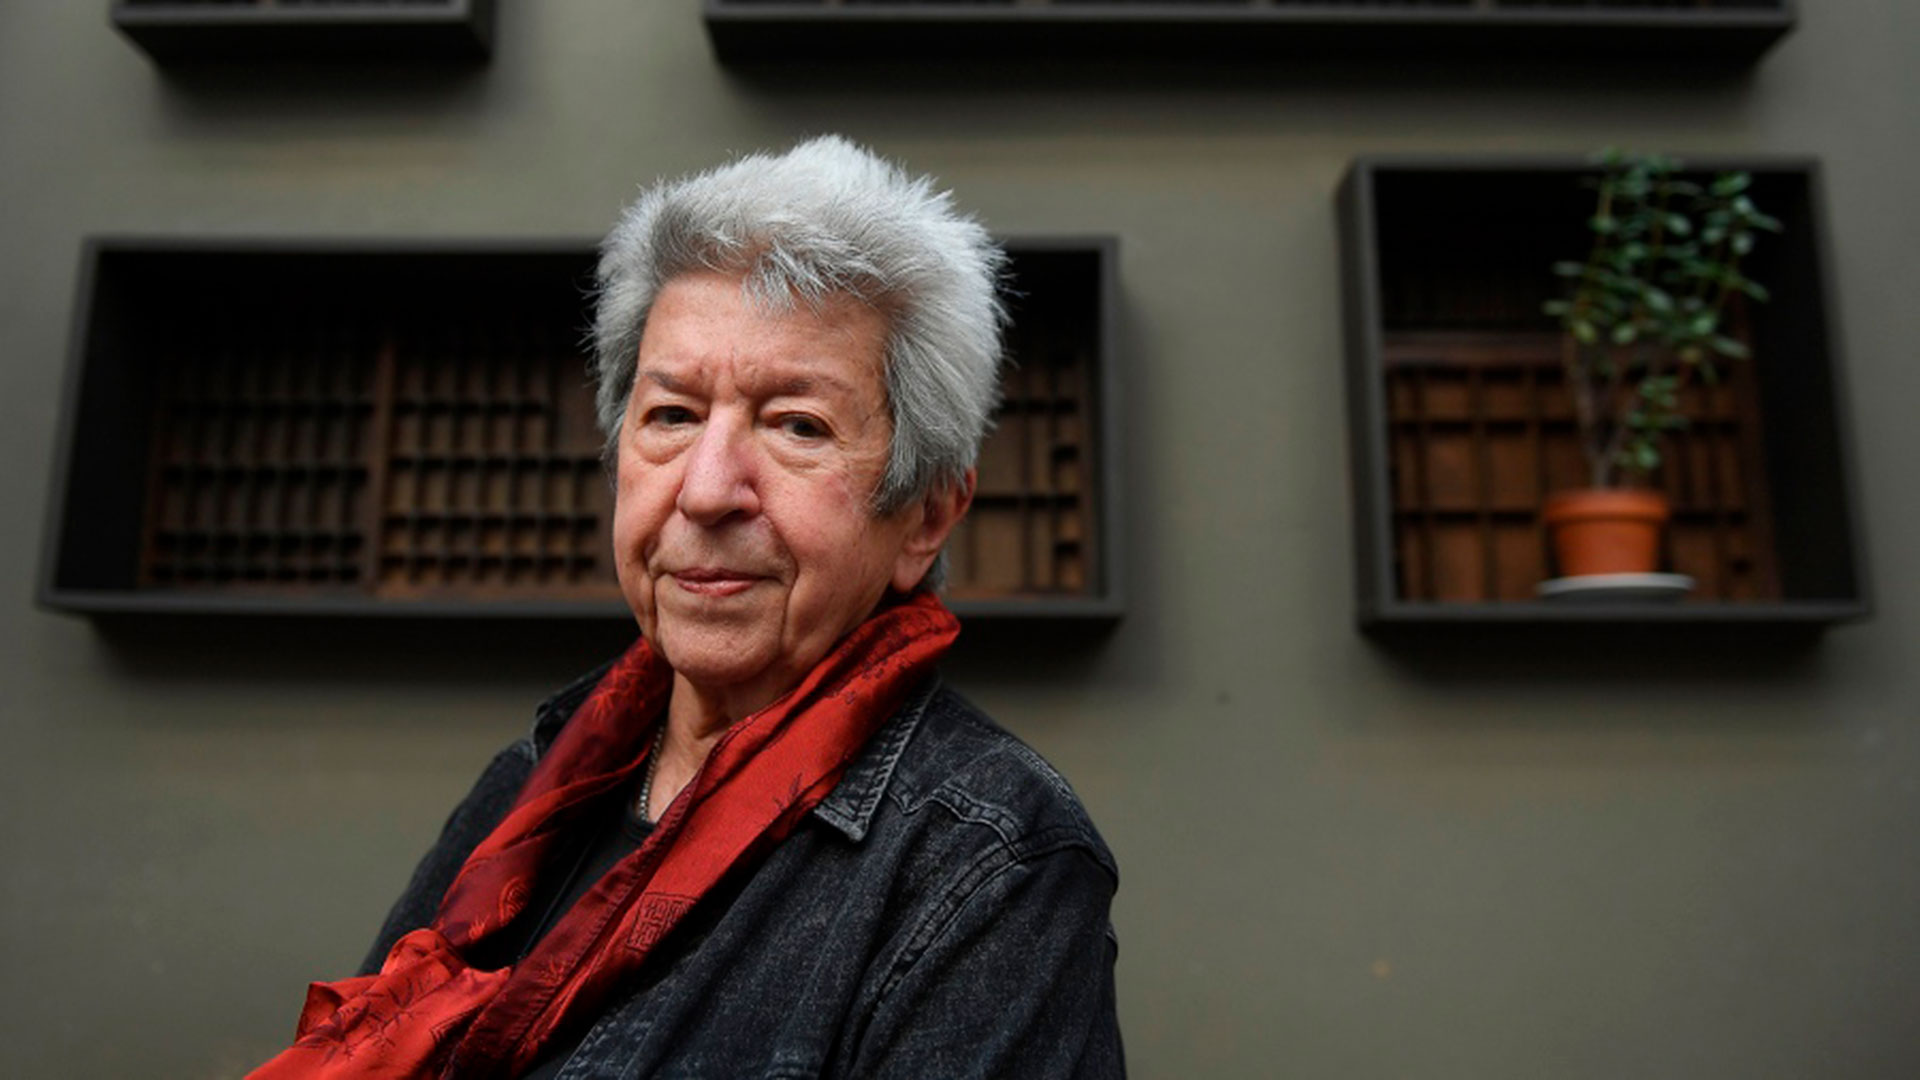 La Feria del Libro de Rosario homenajeó a Sylvia Molloy, autora de míticos libros como "En breve cárcel" o "El común olvido", fallecida en julio de 2022. (Télam)